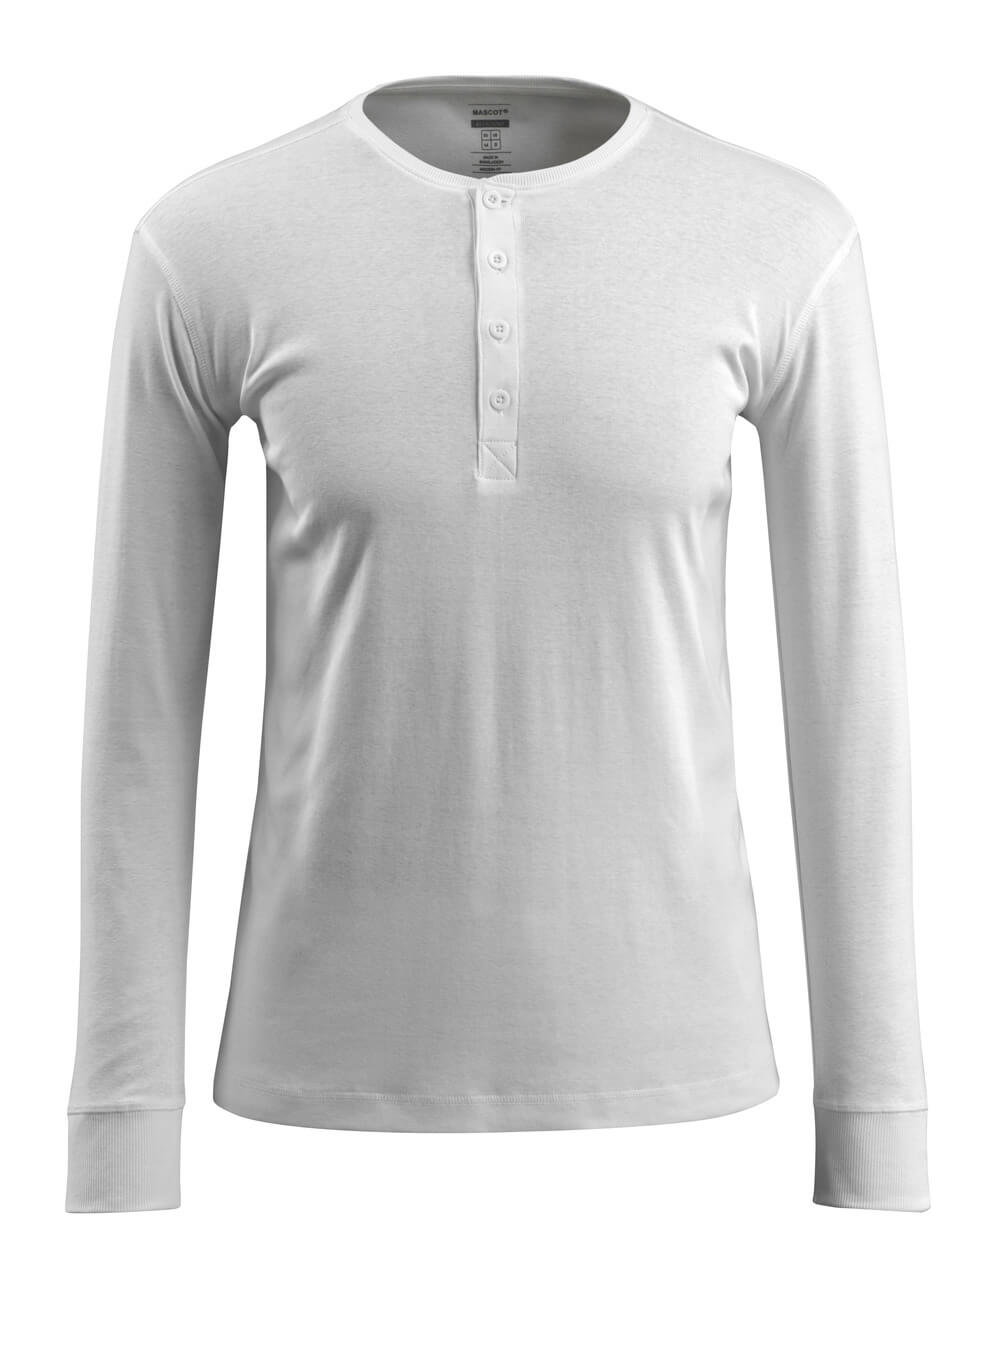 50581-964-06 T-shirt, long-sleeved - white